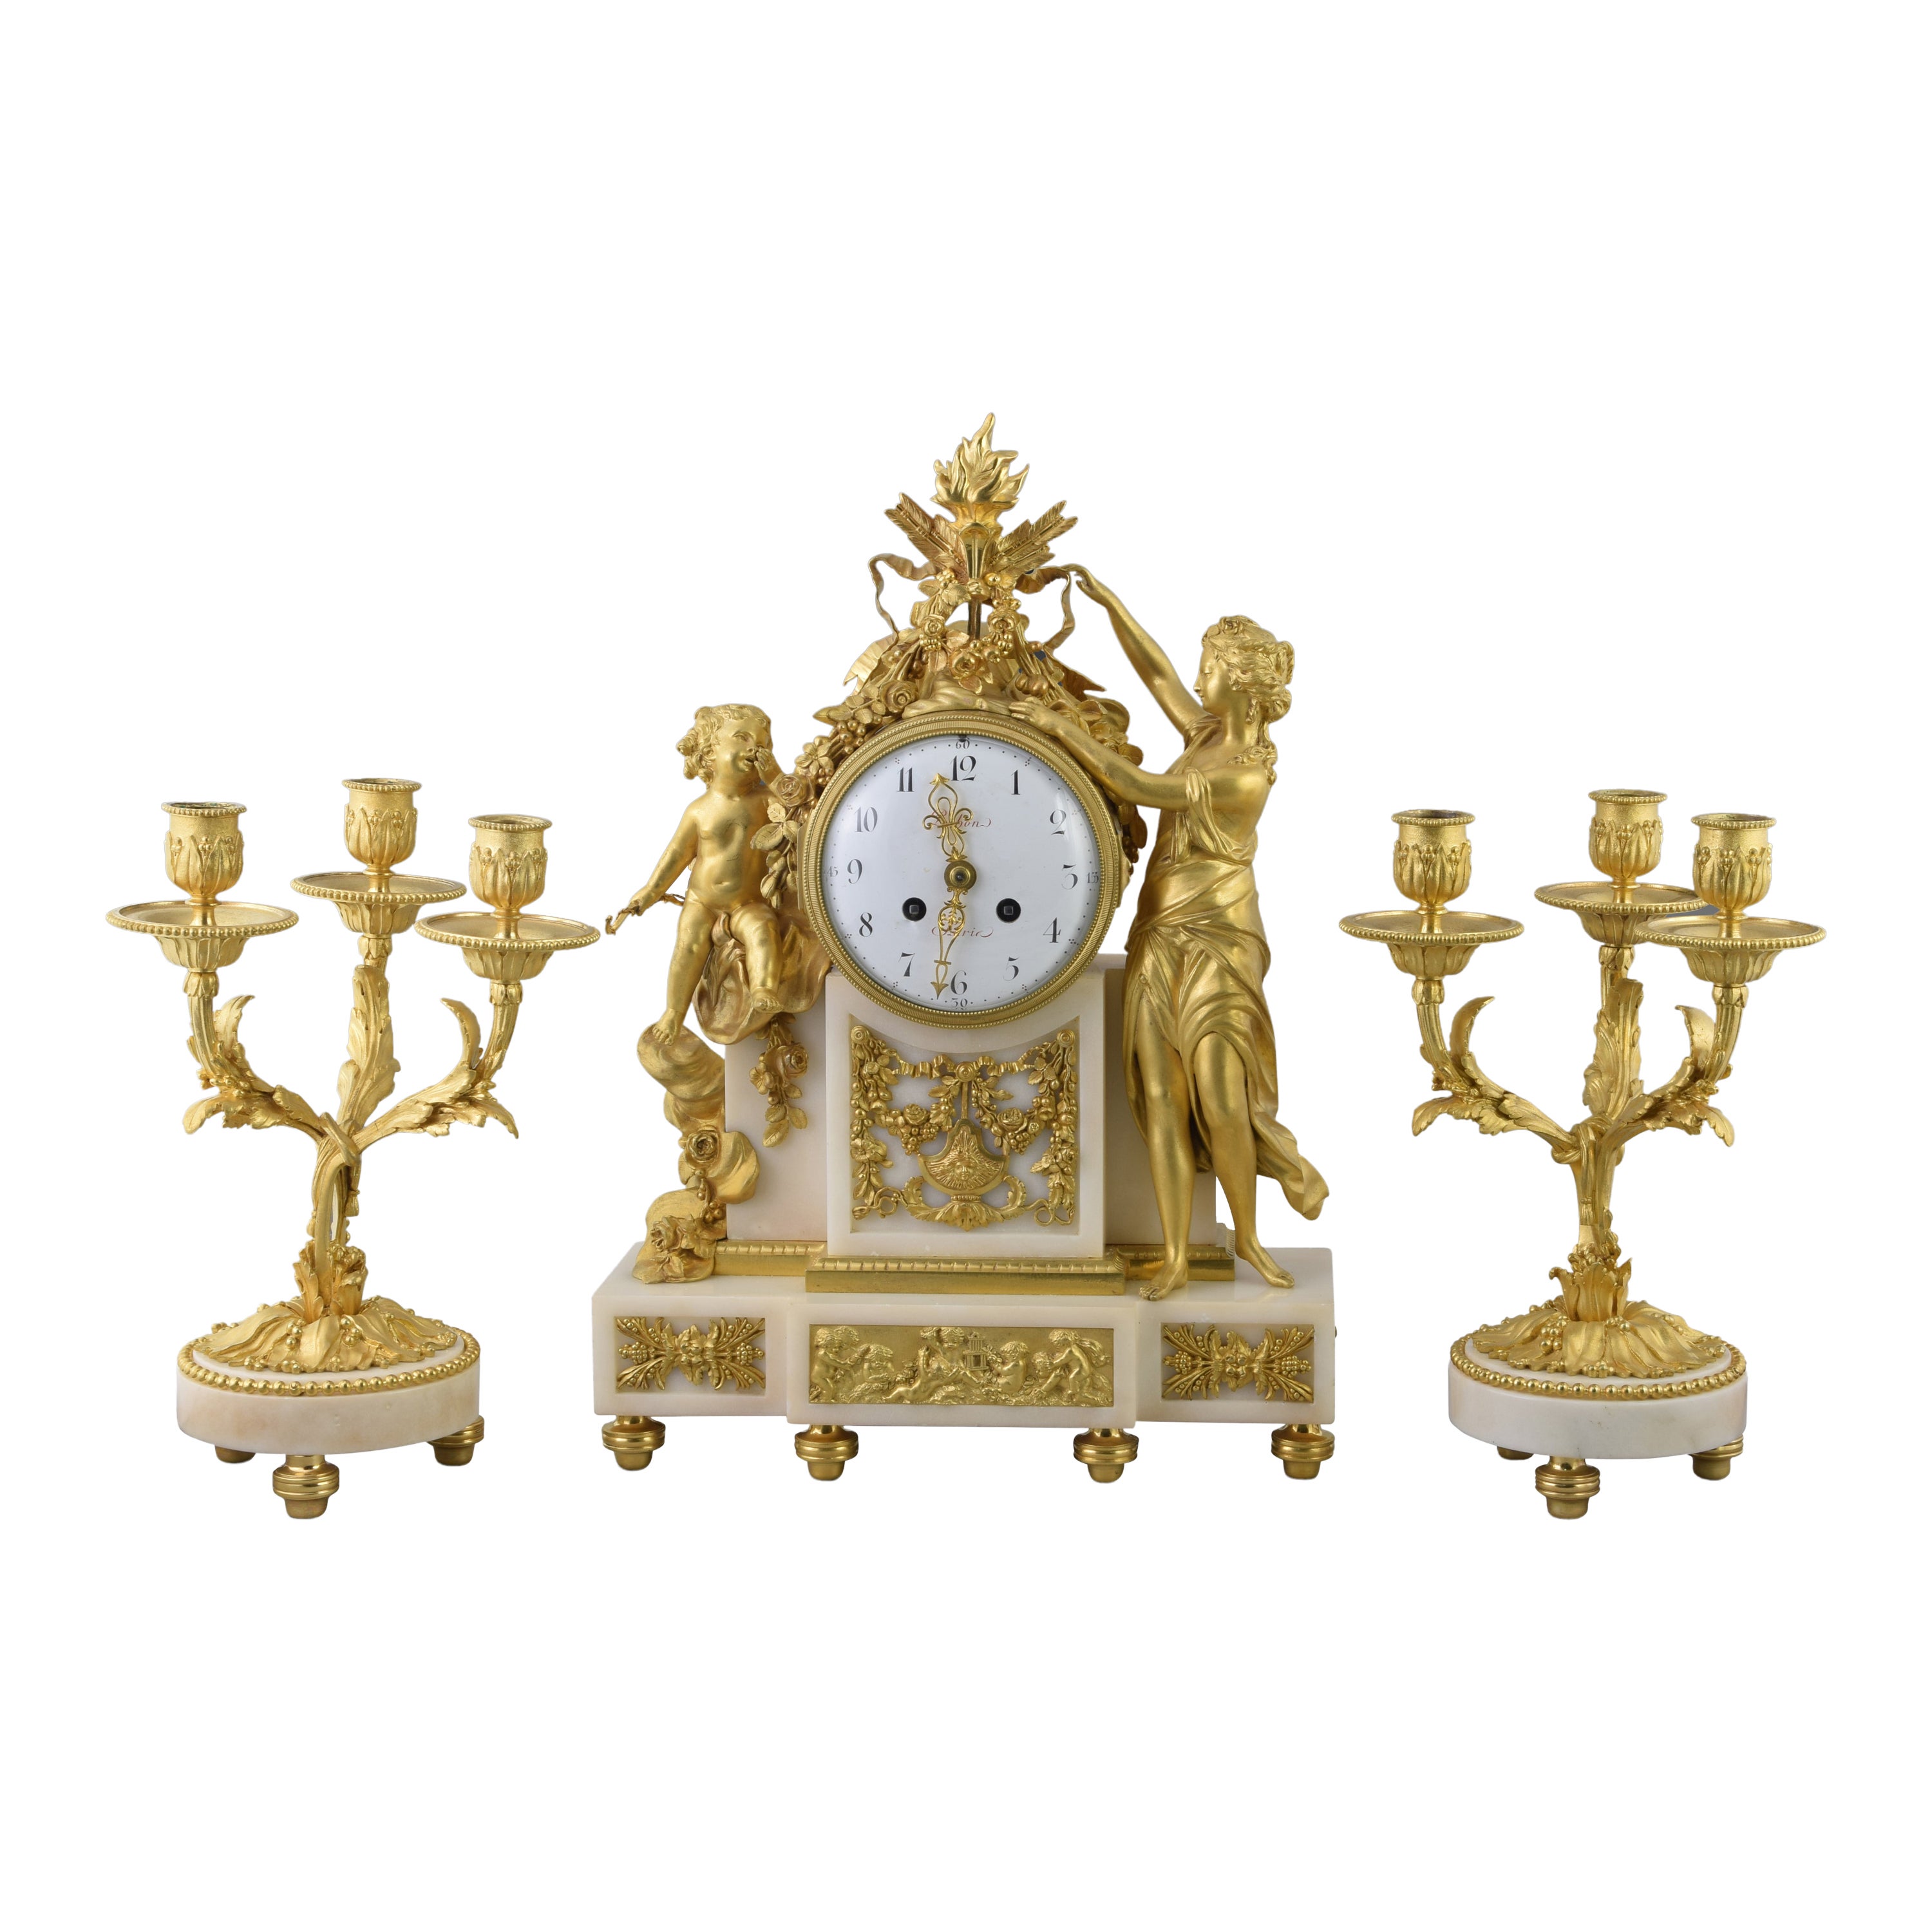 Horloge Louis XVI, garnison et lustres. POCHON. Paris, vers la fin du XVIIIe siècle